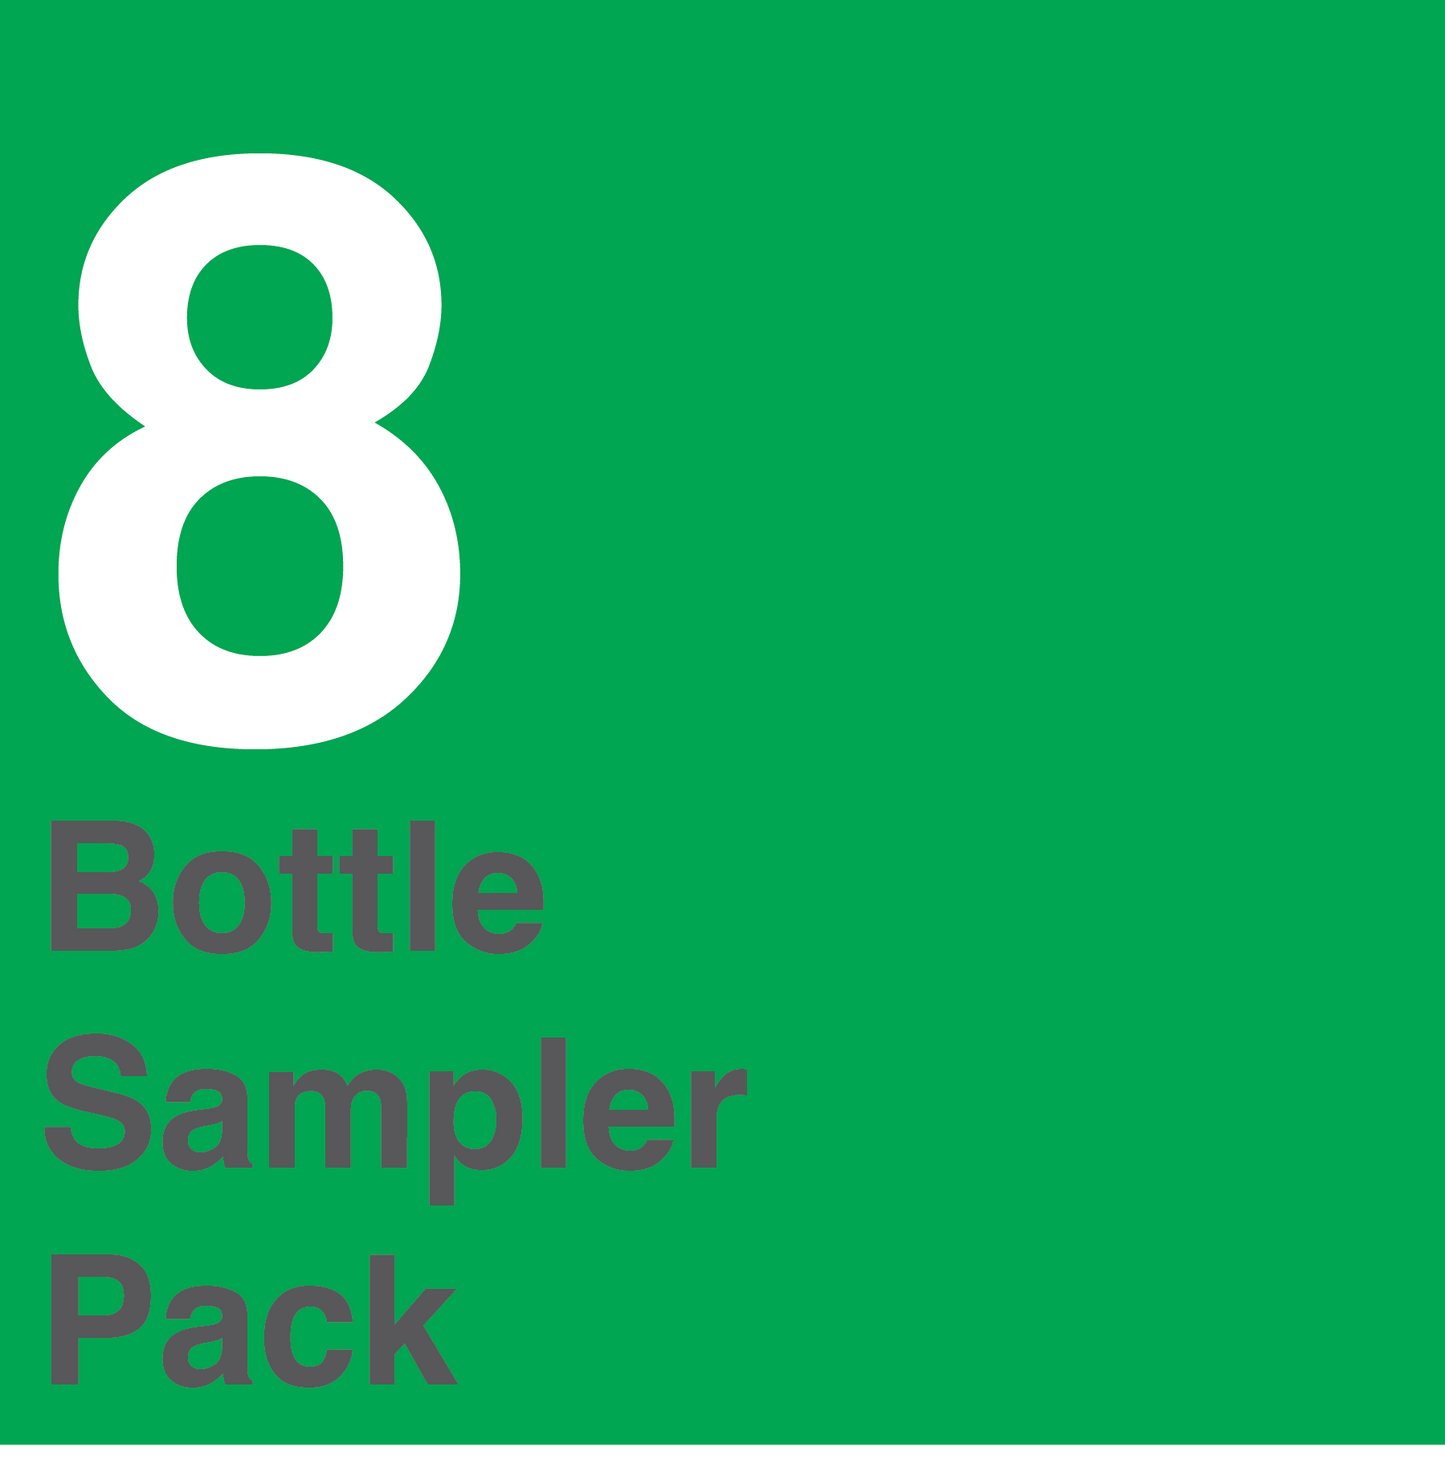 8 Bottle Sampler Pack